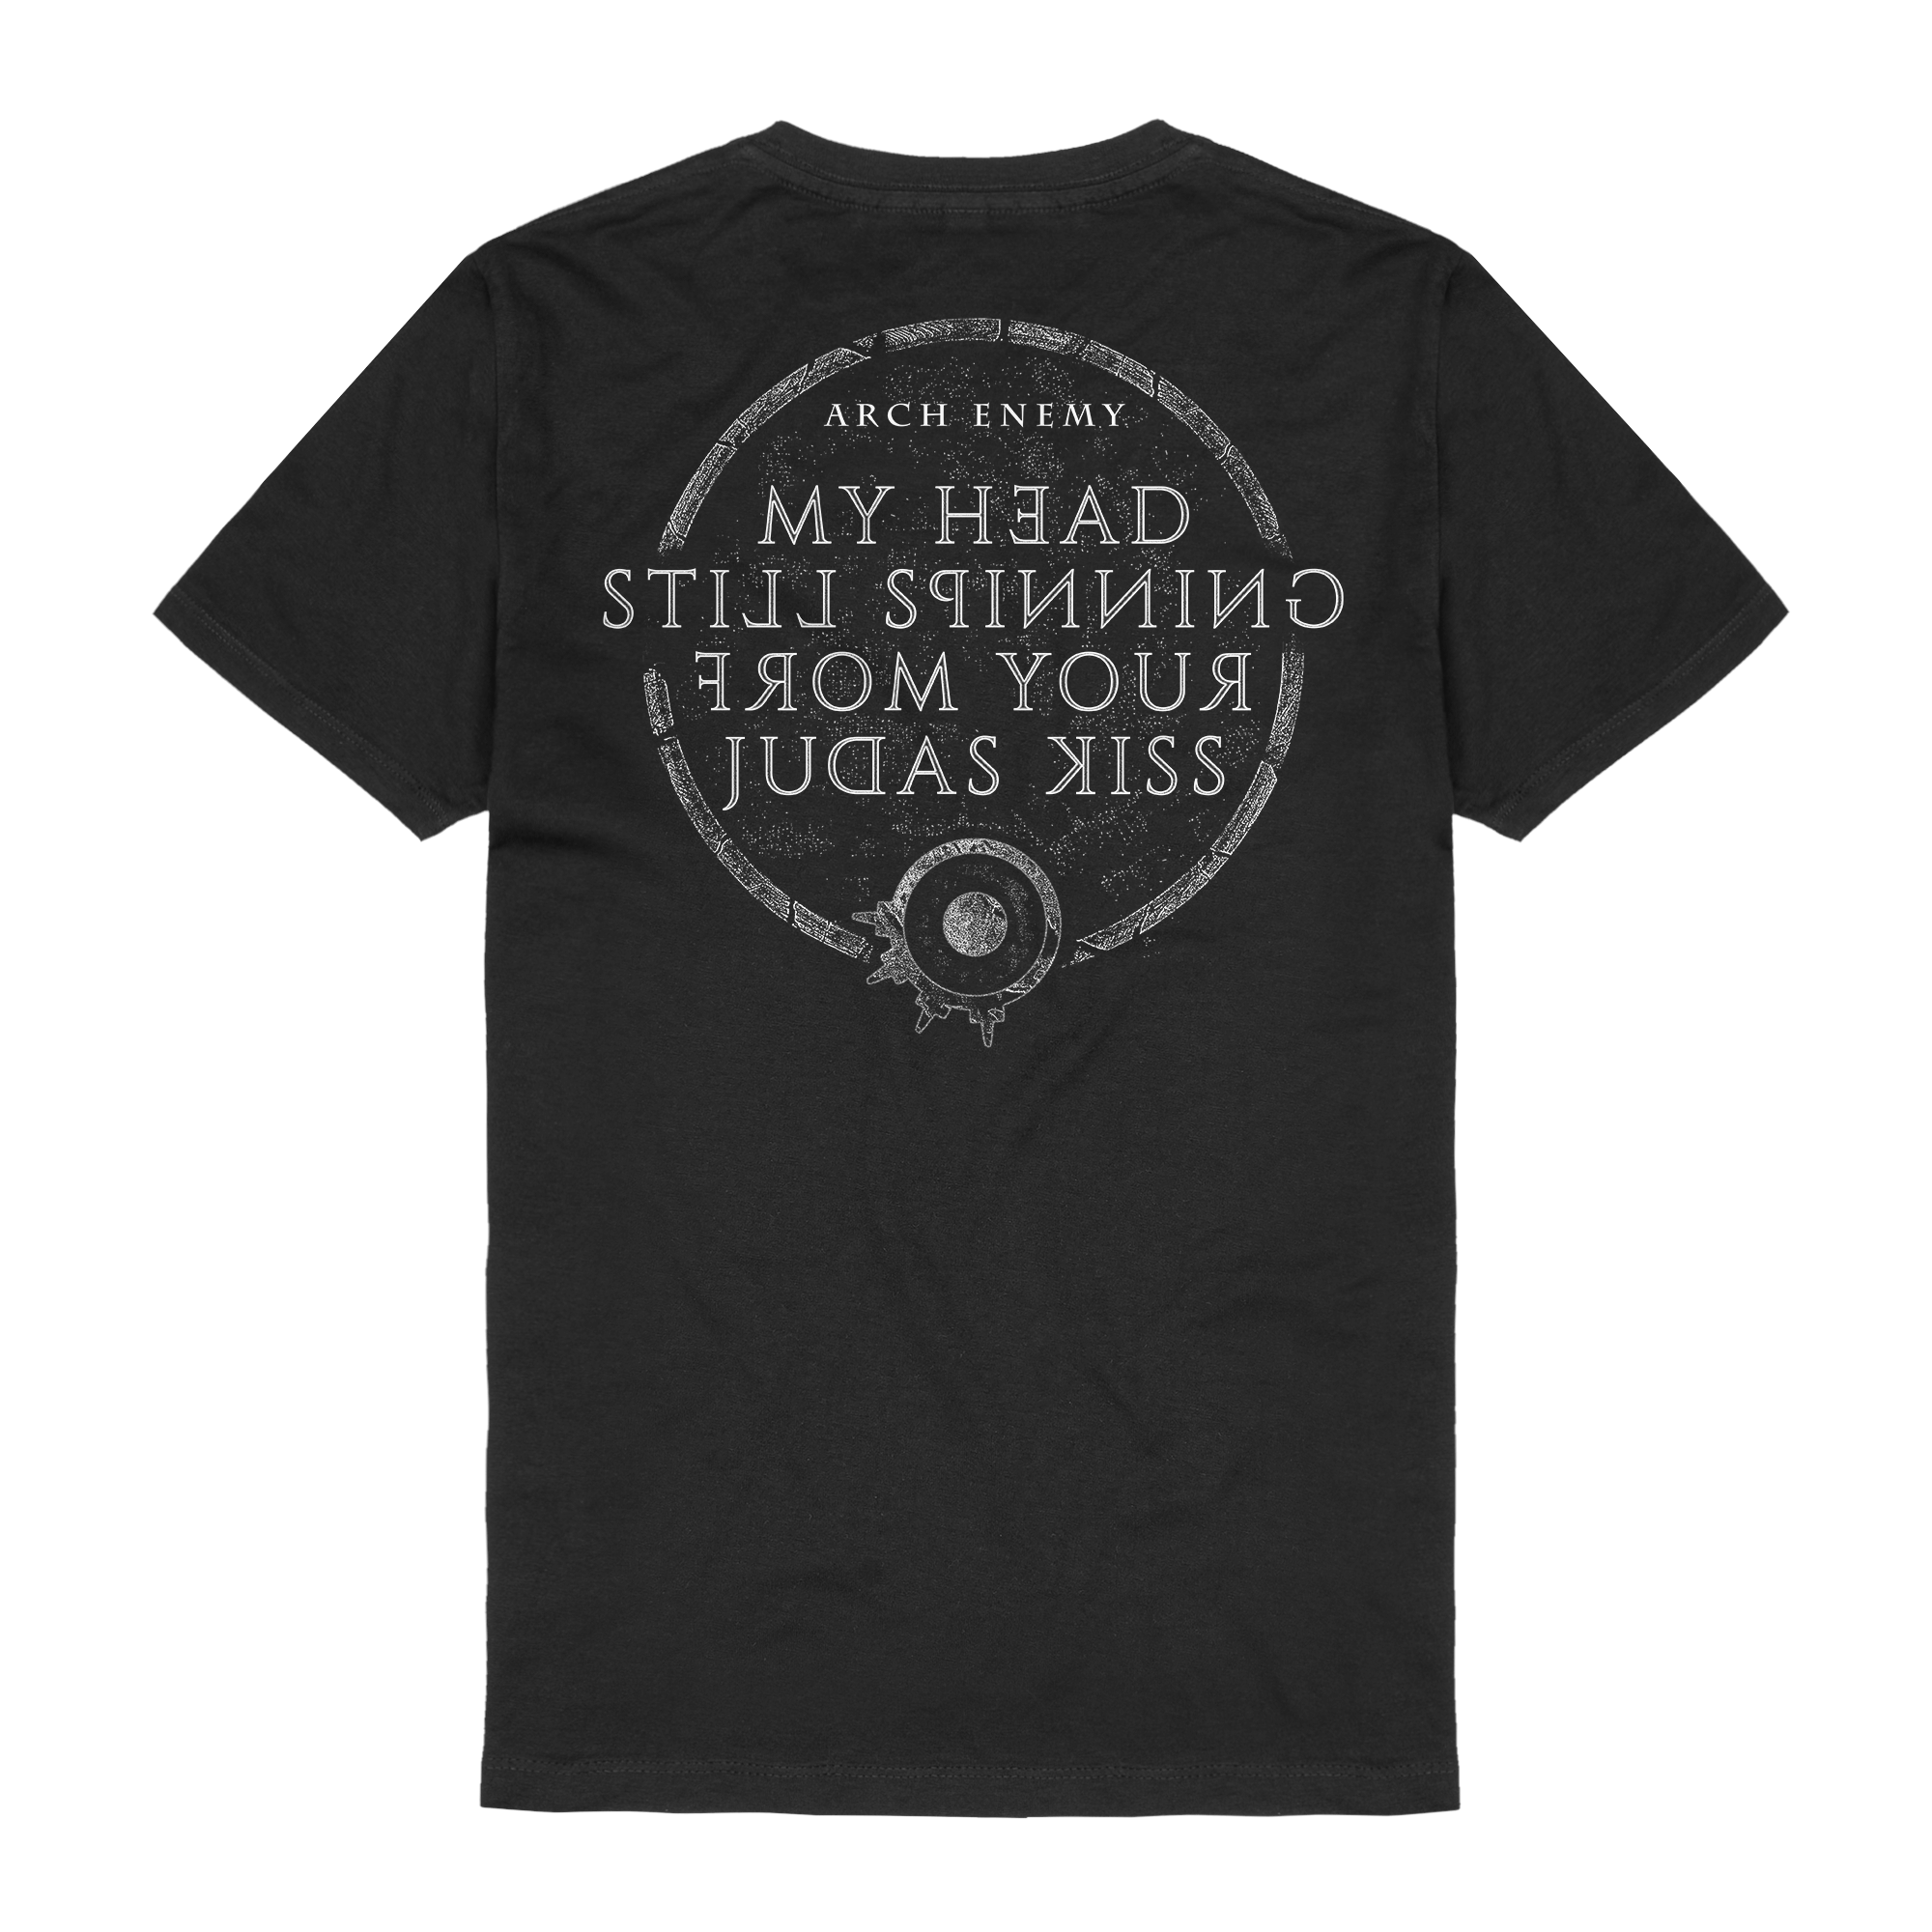 Arch Enemy - Official Shop - Deceiver, Deceiver - Arch Enemy - t-shirt